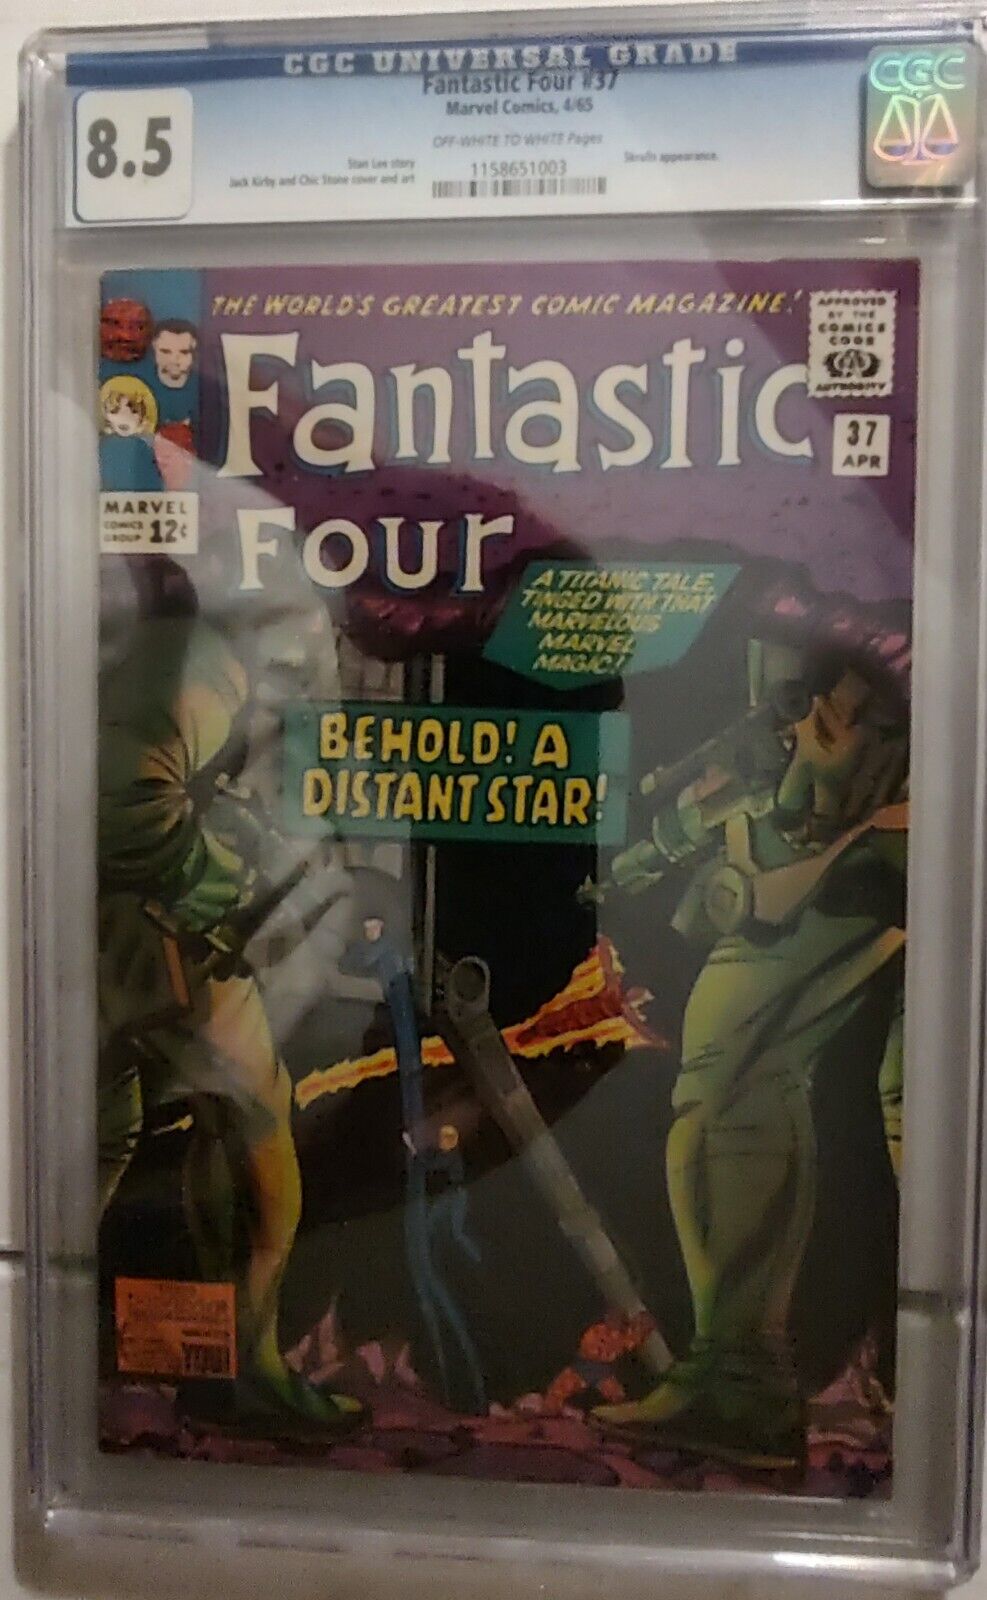 Fantastic Four #37 CGC 8.5 